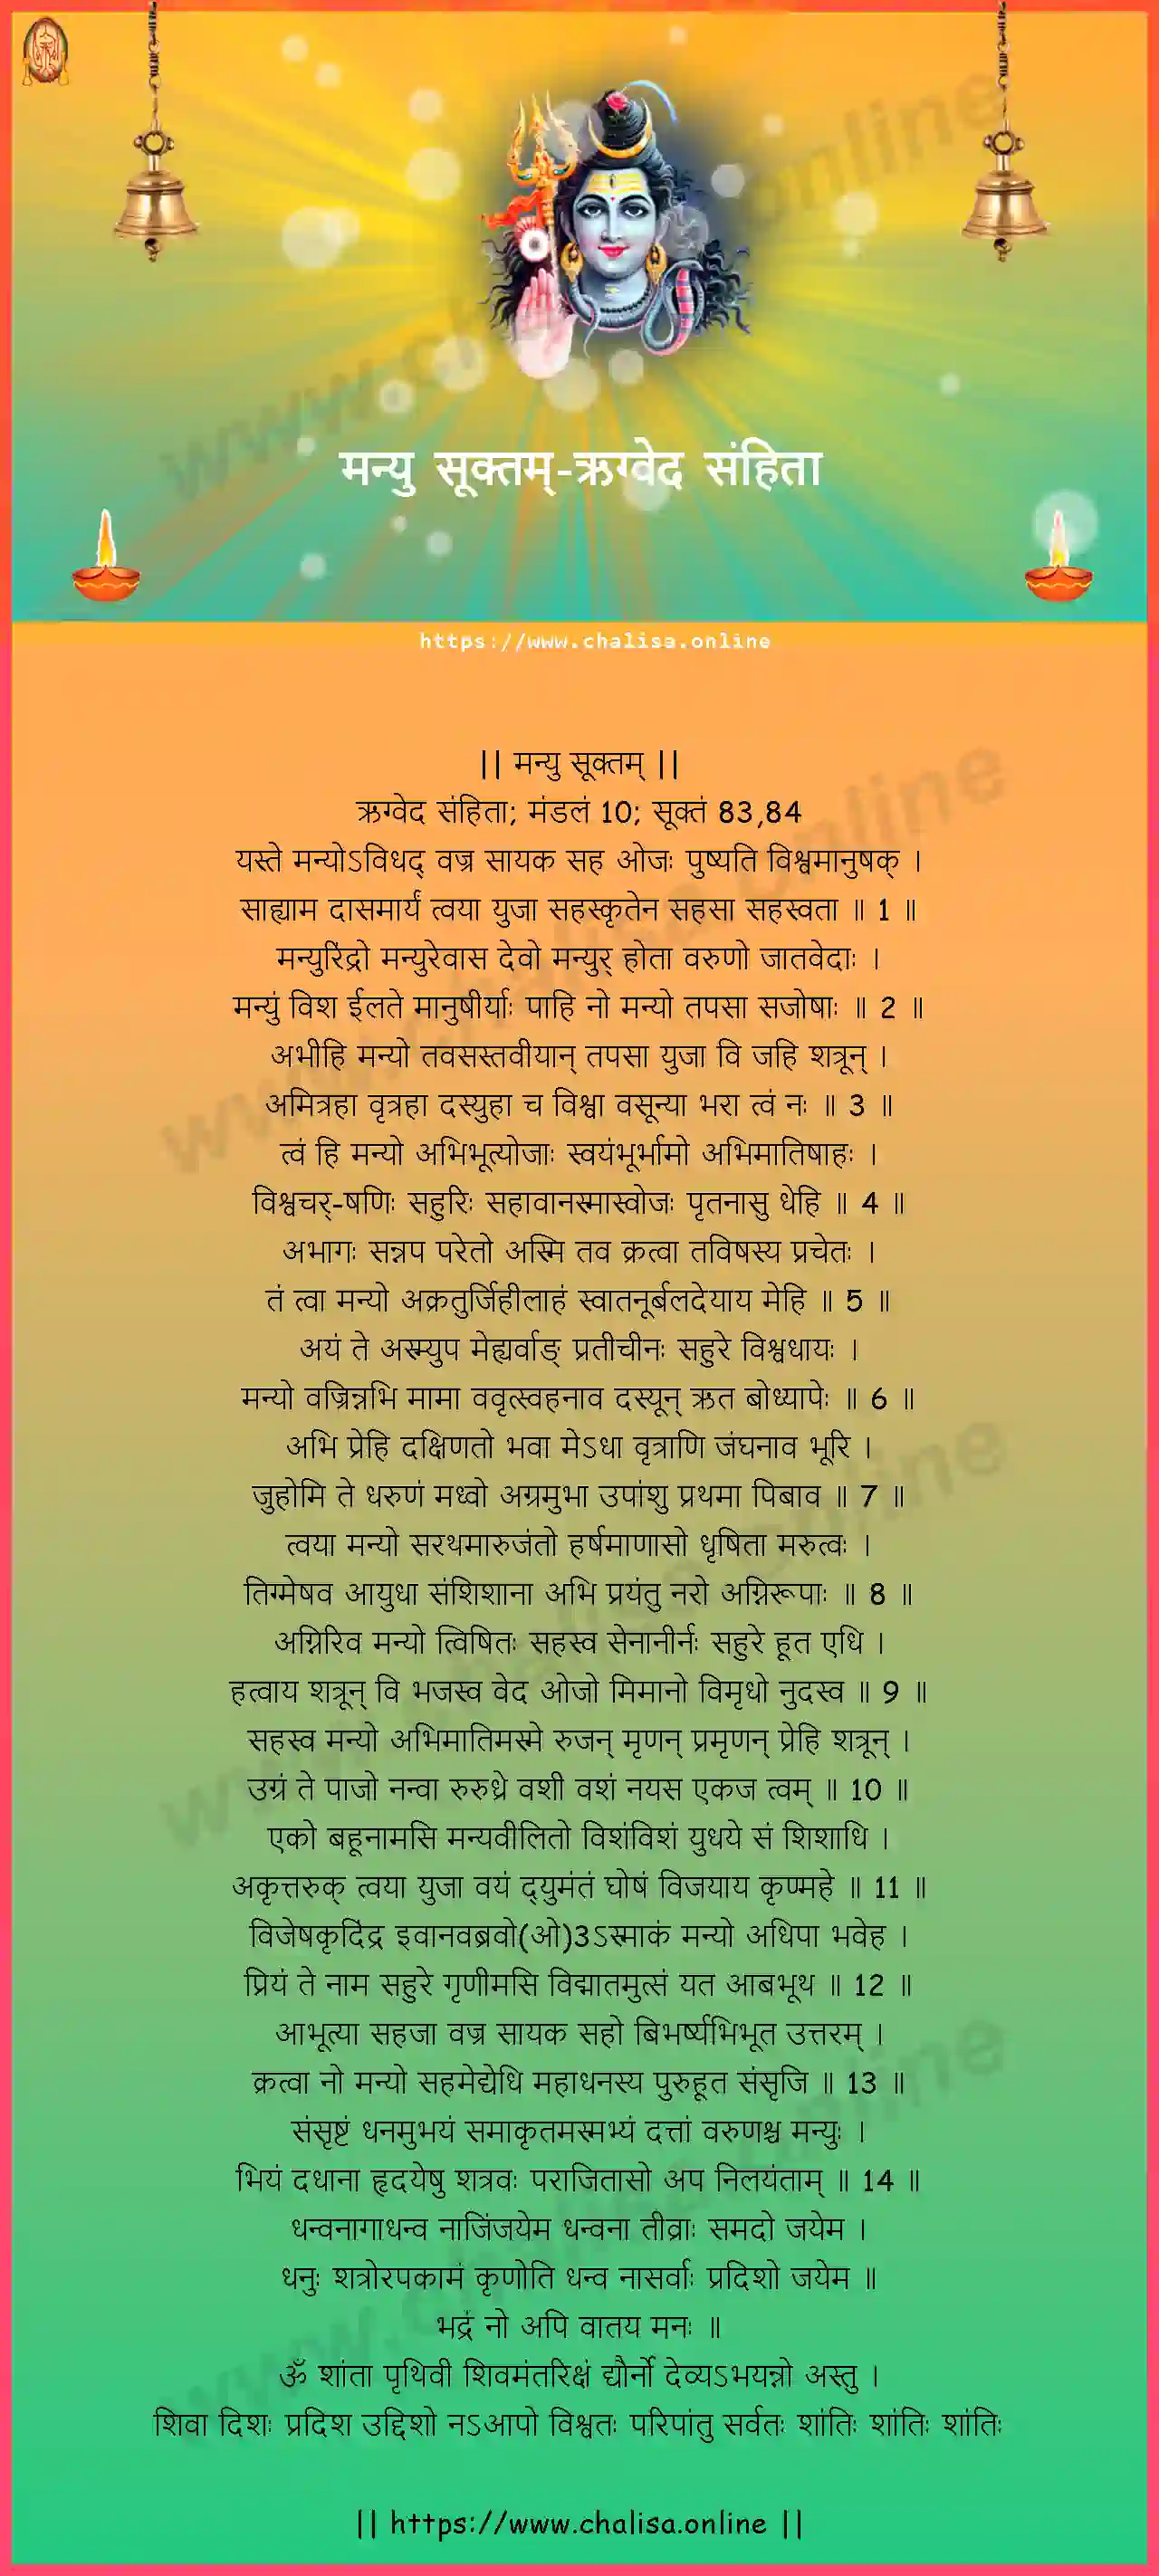 rigveda-samhita-manyu-suktam-hindi-hindi-lyrics-download